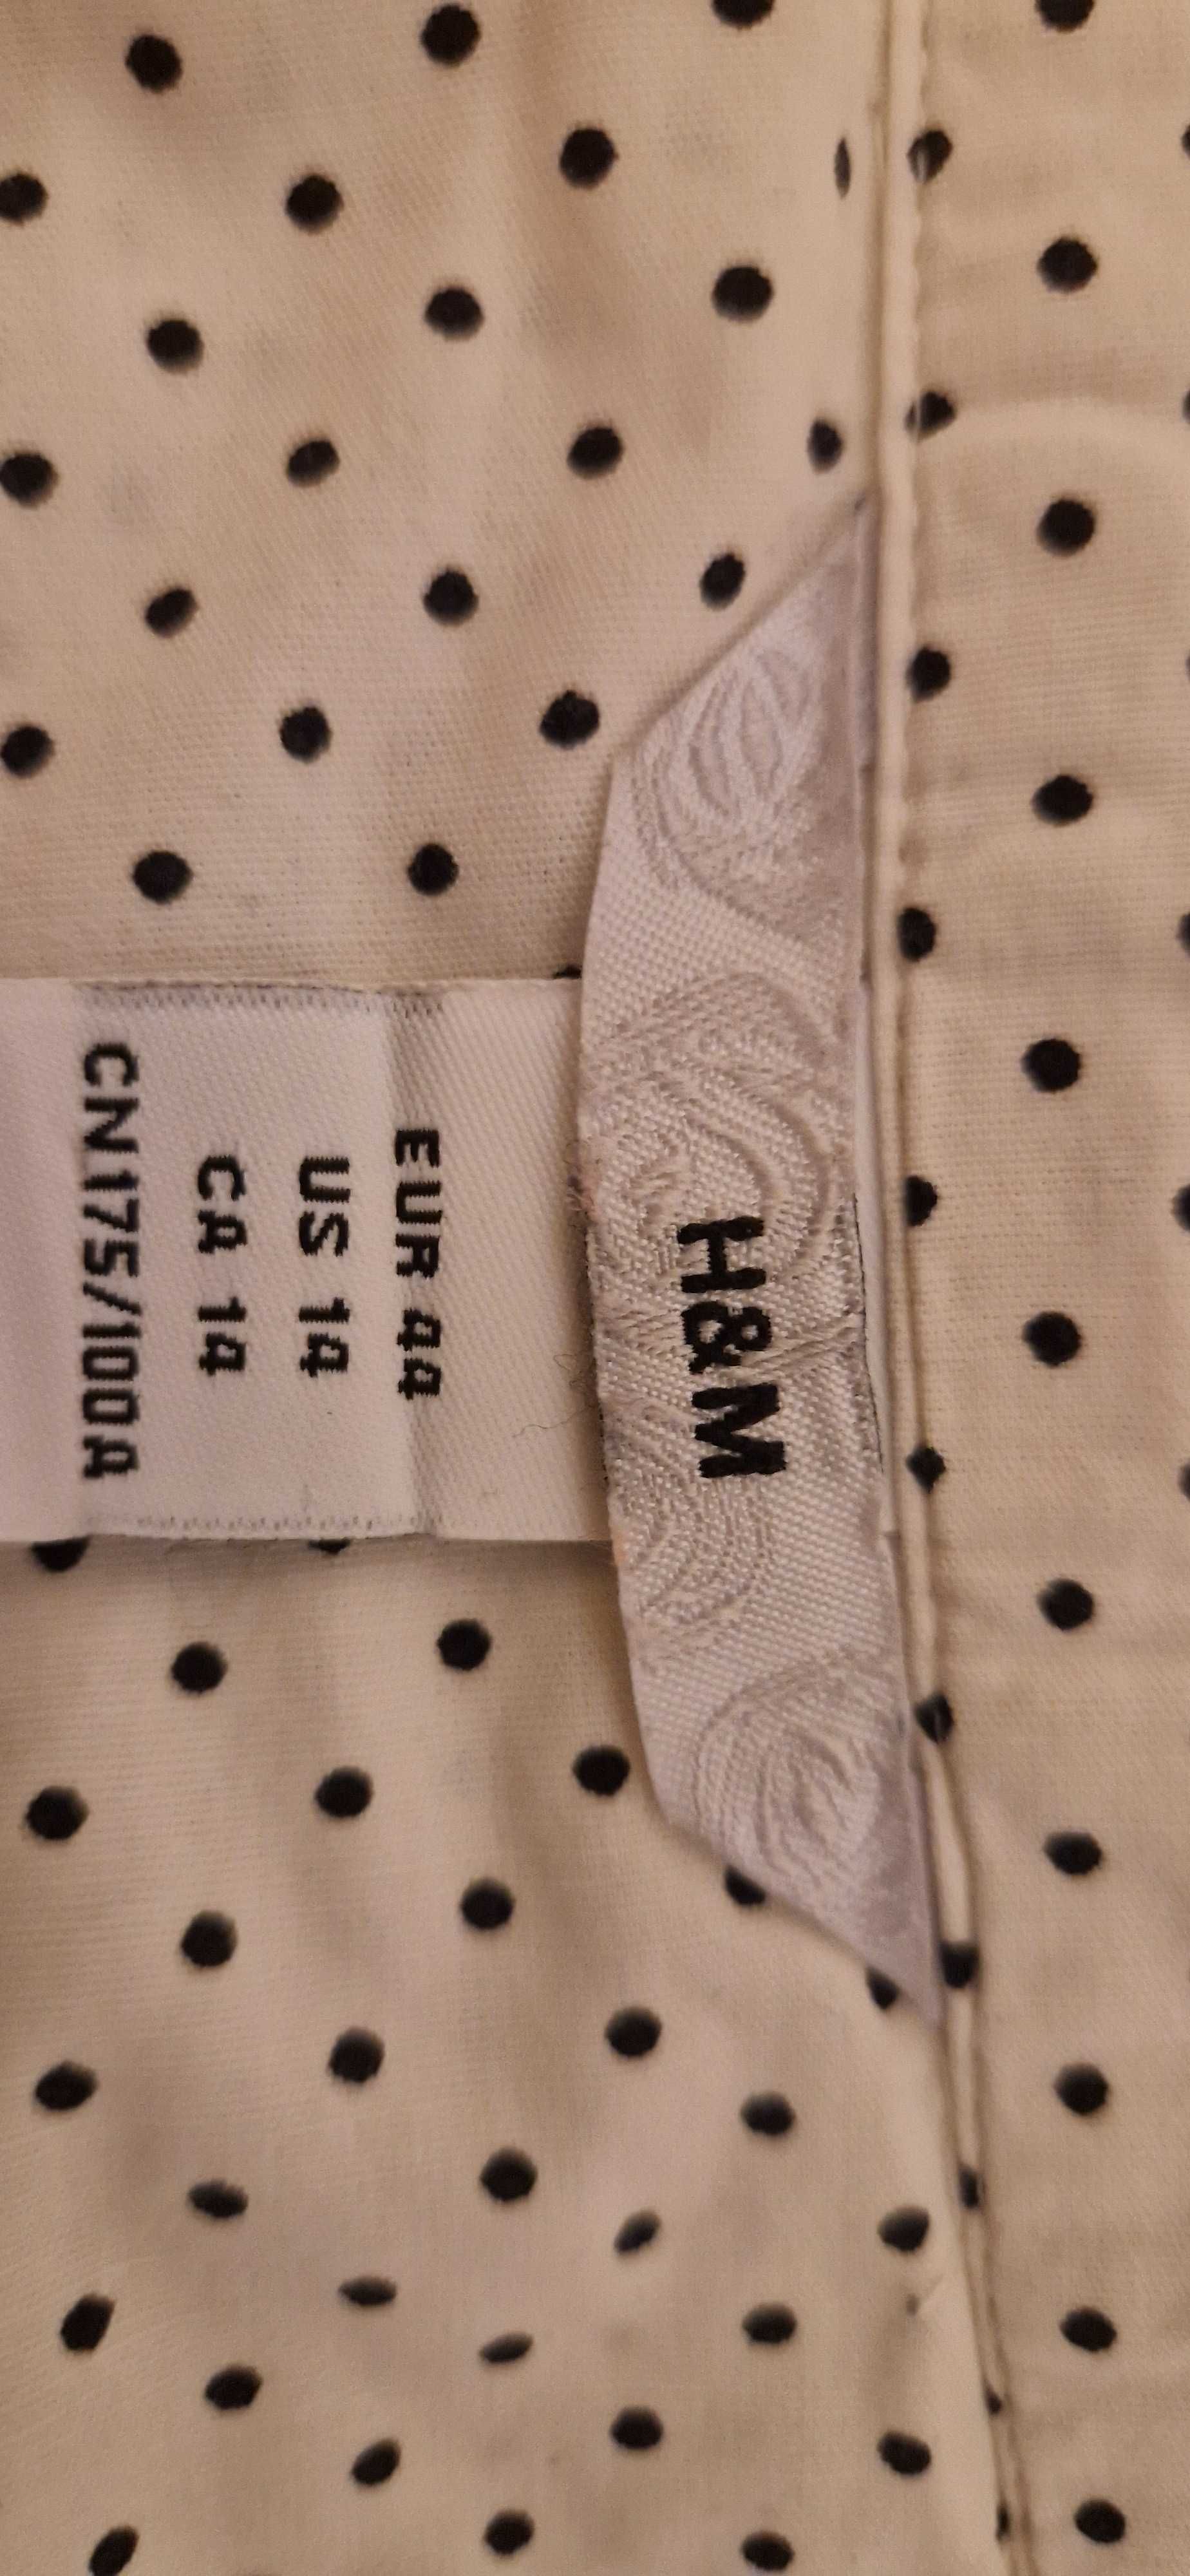 Bluzka damska taliowana, biała w czarne kropki, H&M, R 44